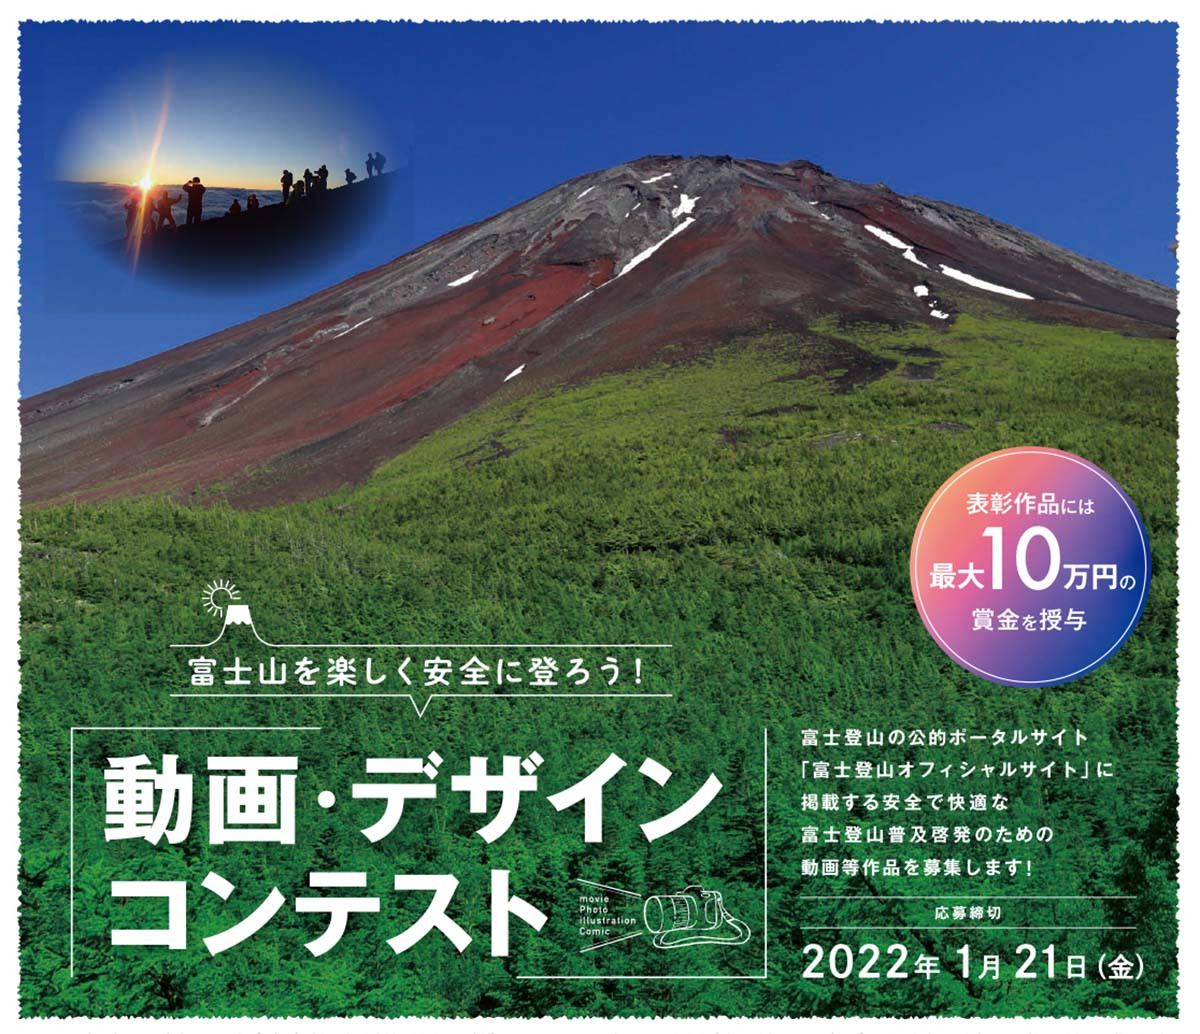 富 を楽しく安全に登ろう 富士登山オフィシャルサイト が 啓発のための動画 デザイン作品を募集中 ヤマケイオンライン 山と溪谷社